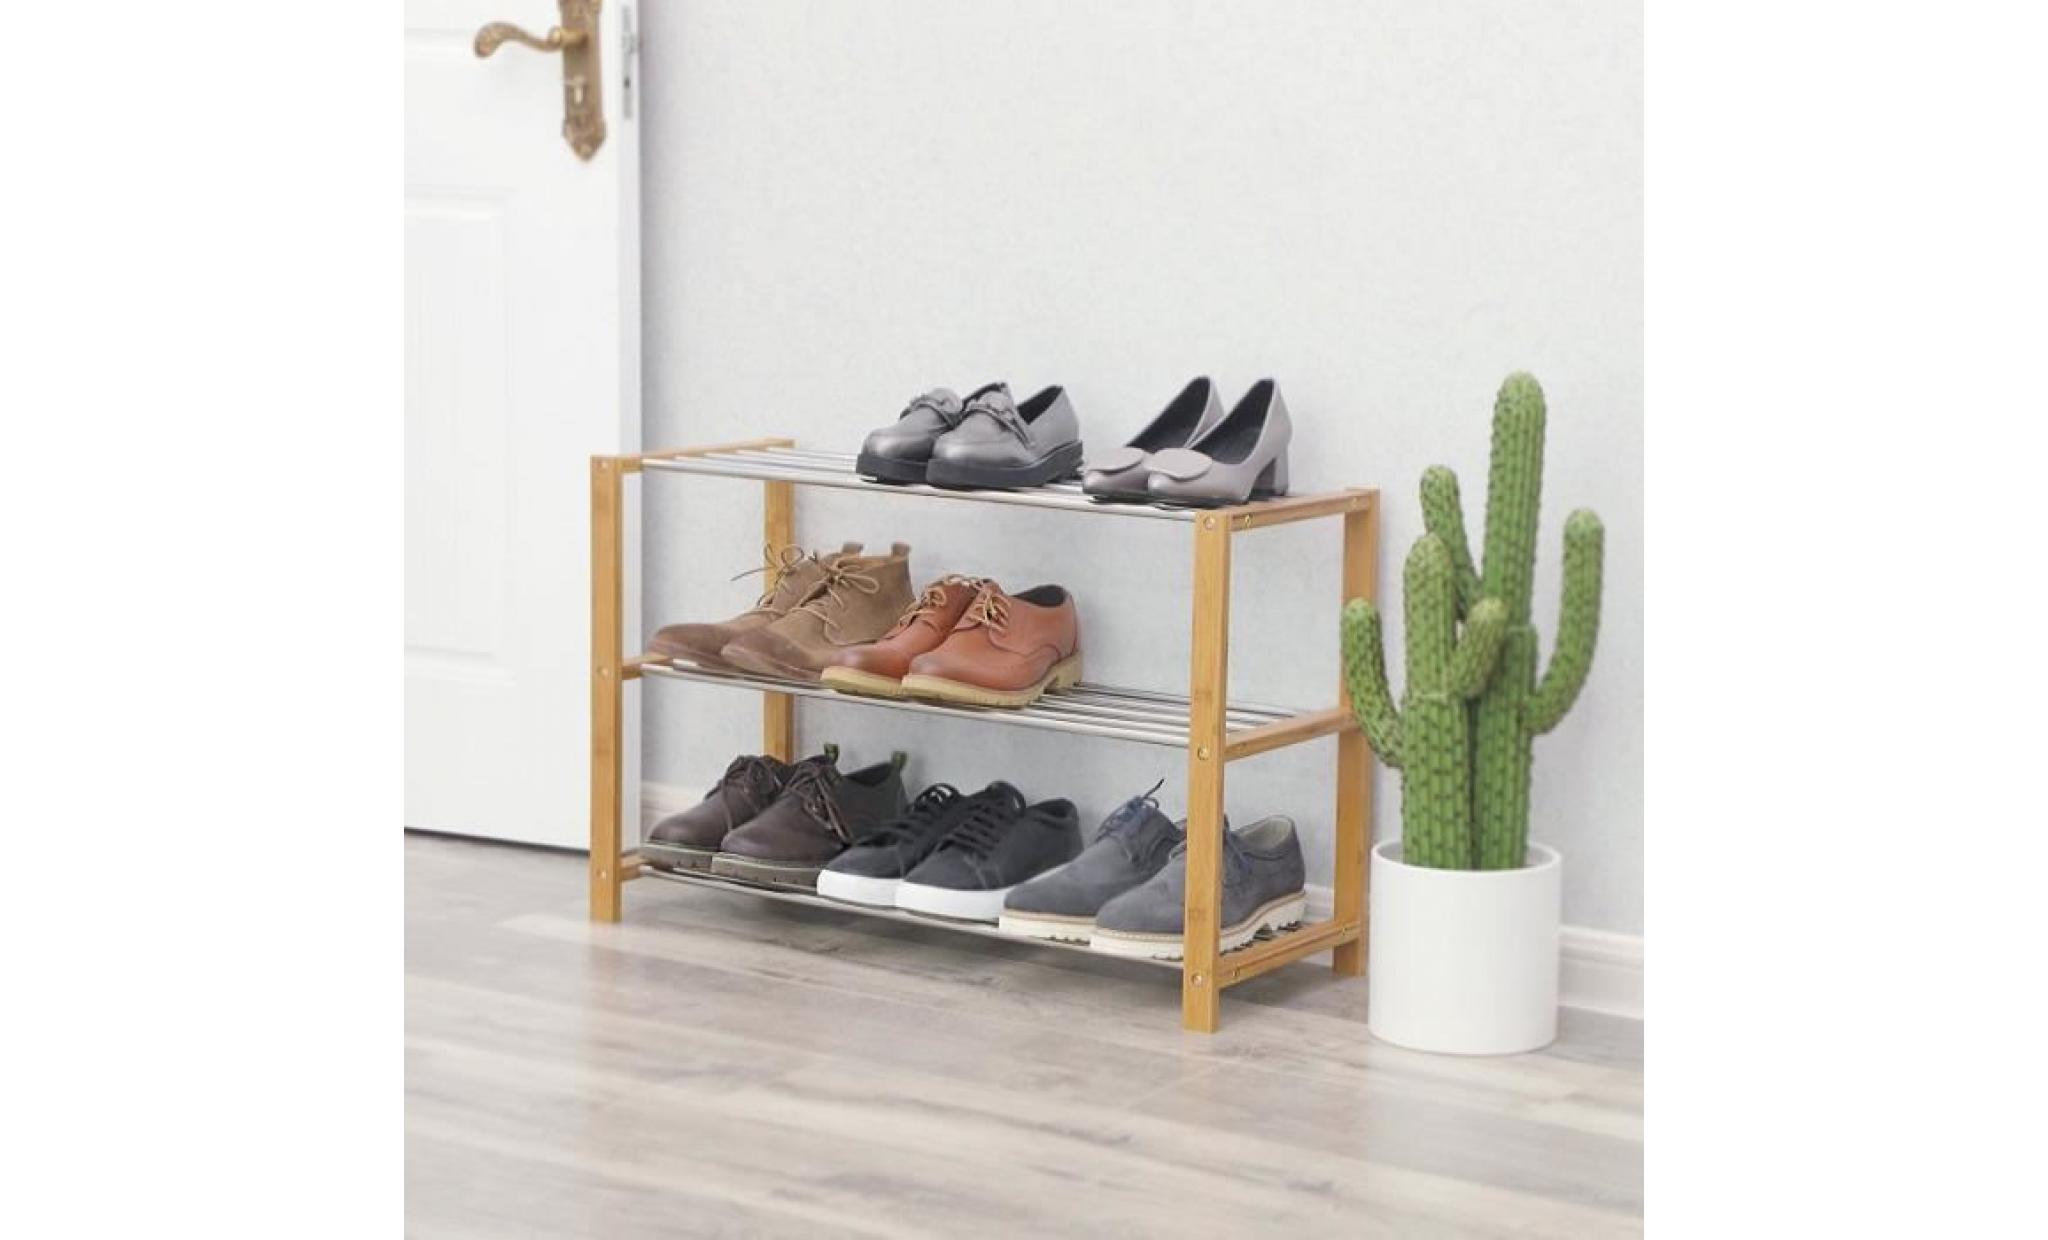 songmics® Étagère à chaussures, 100% bambou naturel, 2 niveaux, meuble rangement, siège pour chausser lbs04n